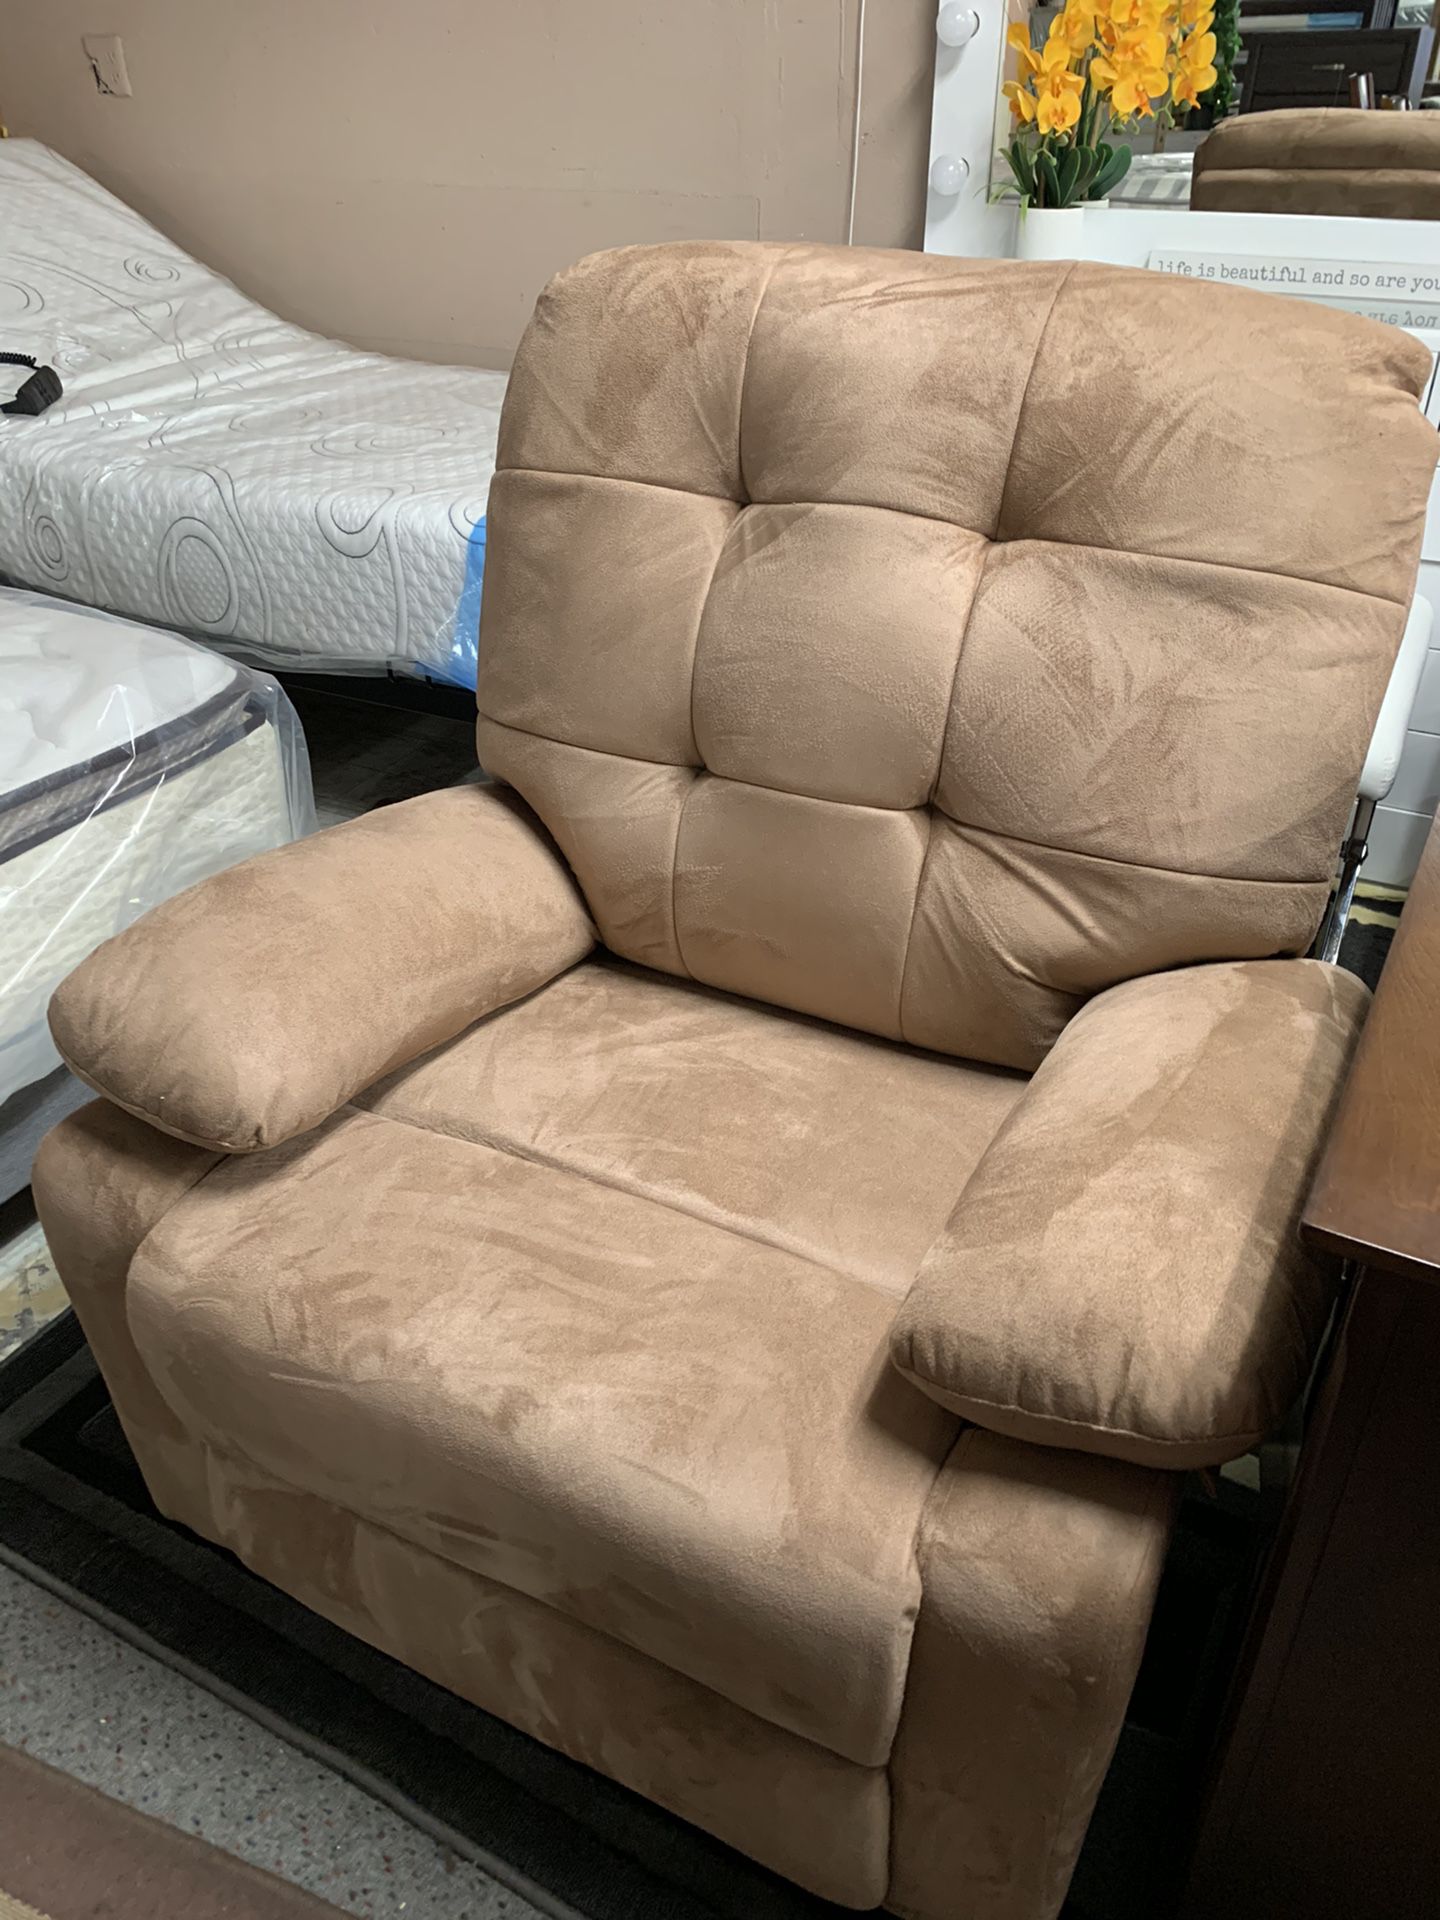 New recliner $299